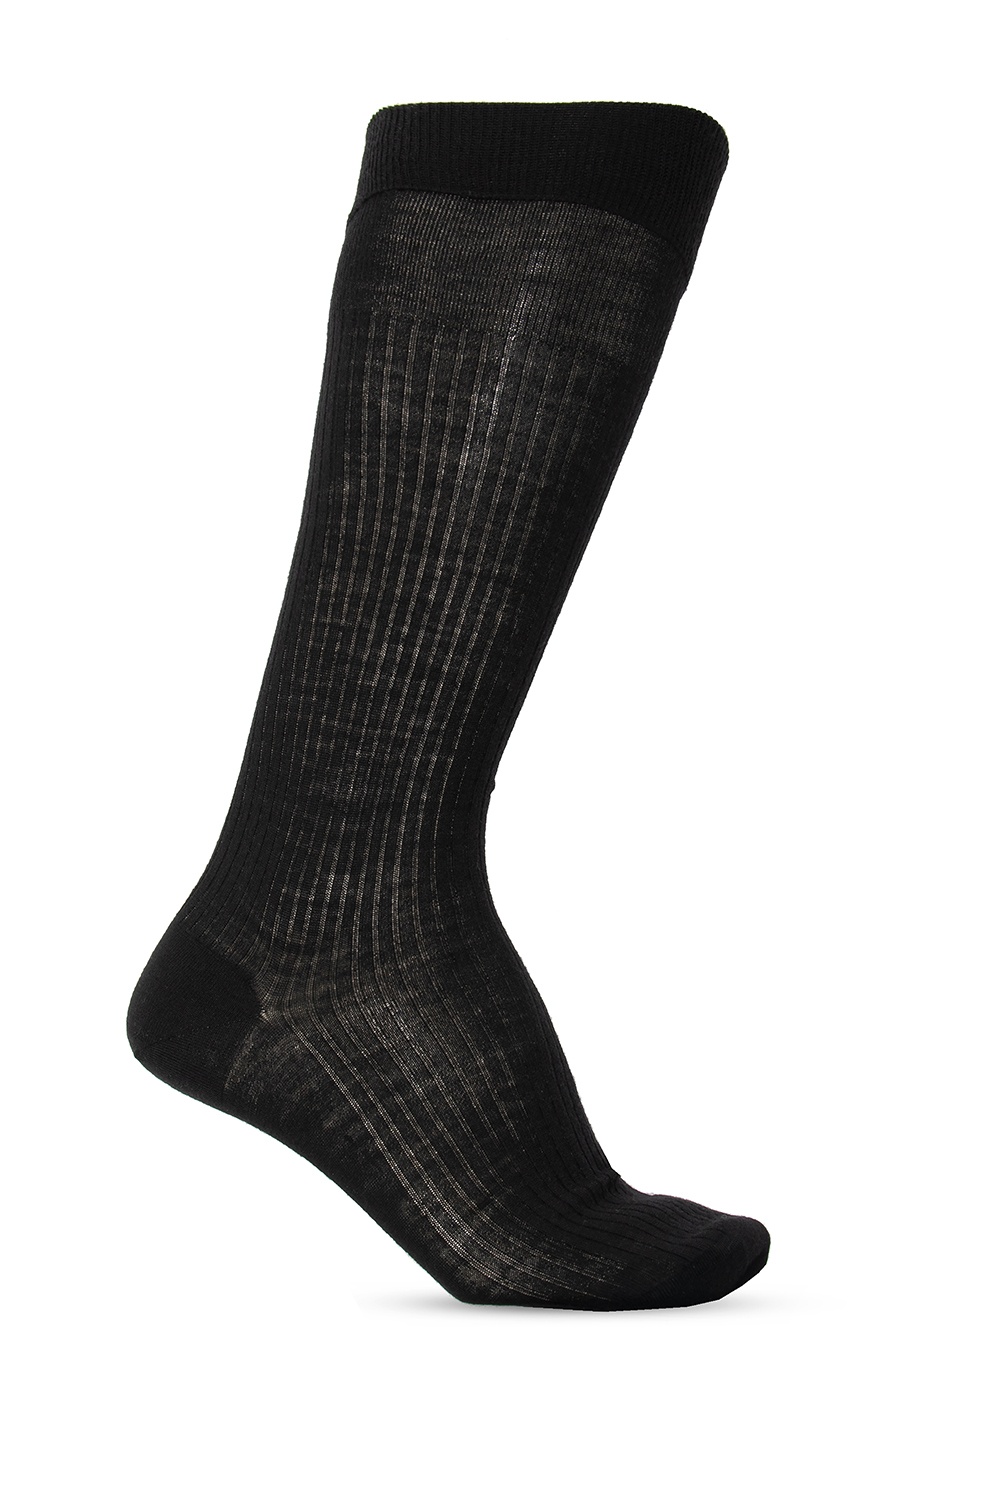 Dsquared2 Wool logo socks